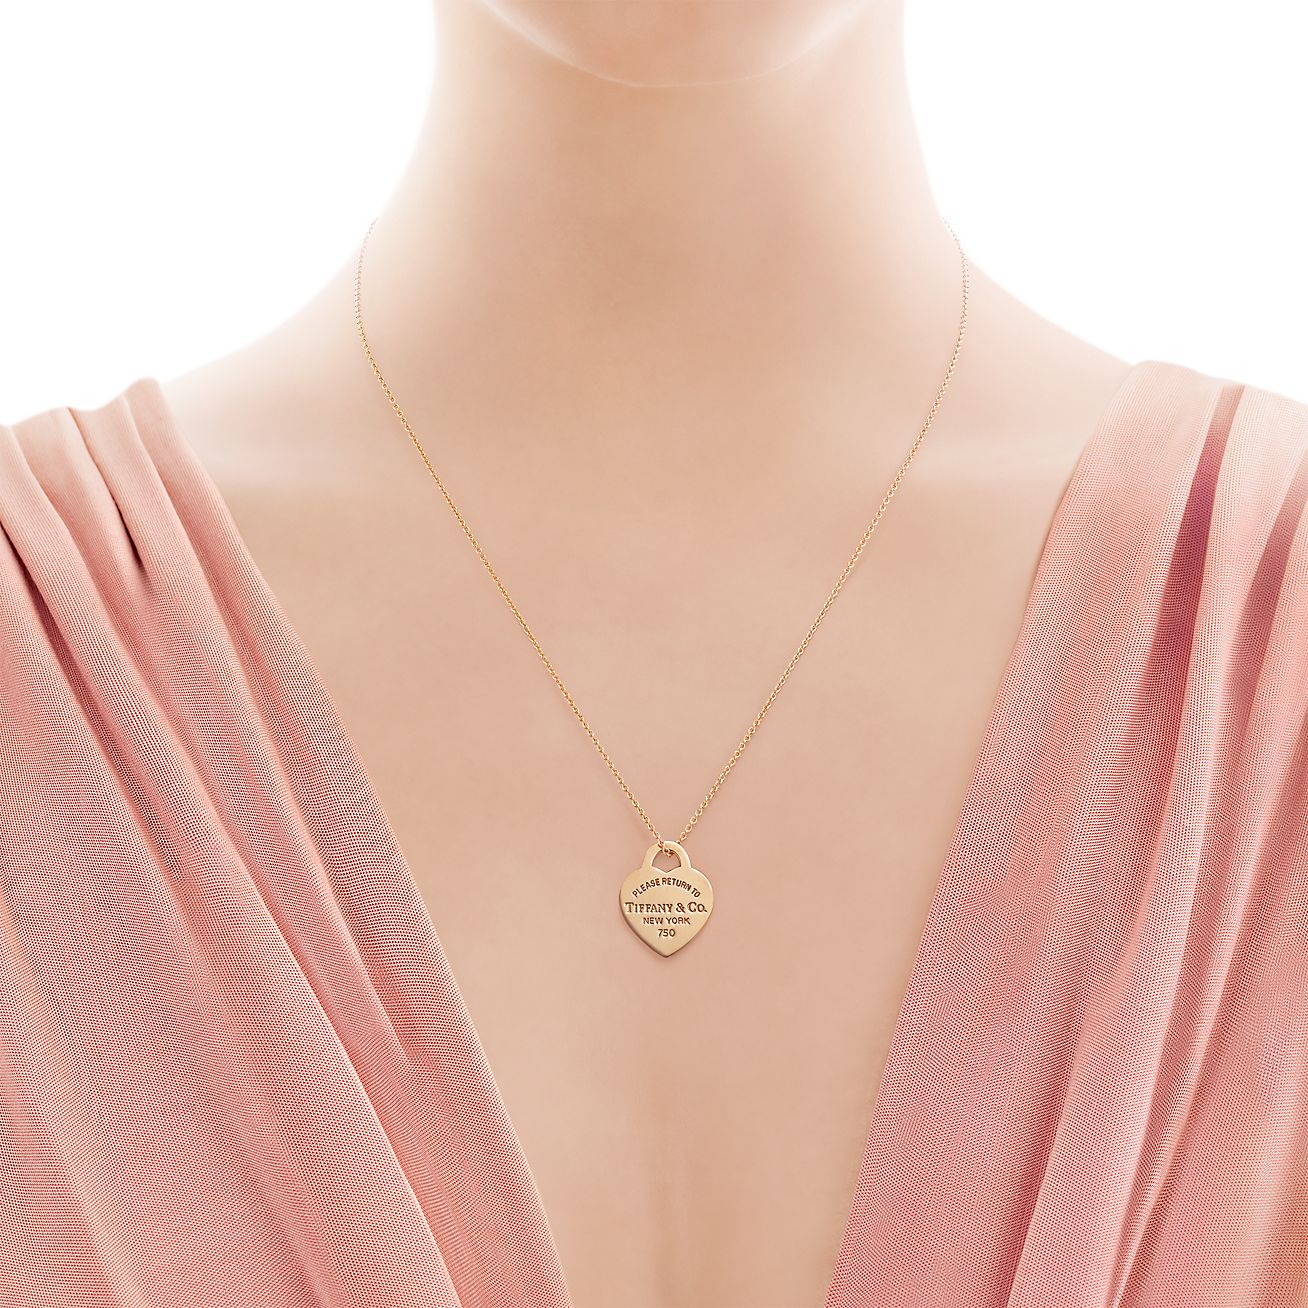 tiffany heart shaped necklace